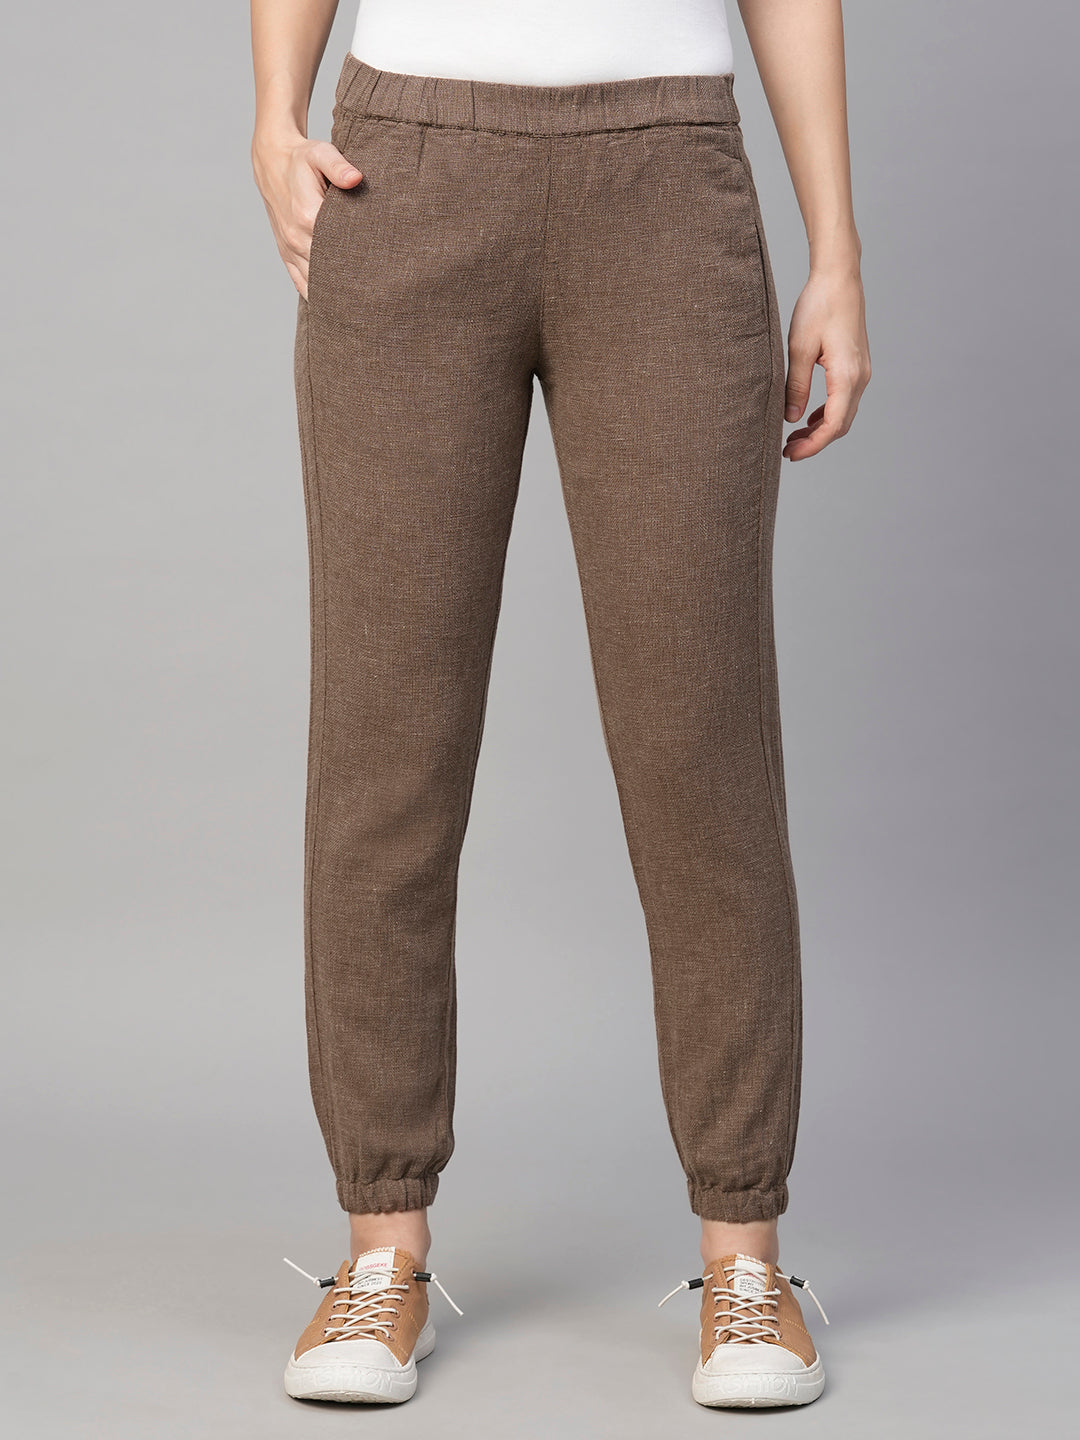 Women's Brown Linen Cotton Jogger Pant